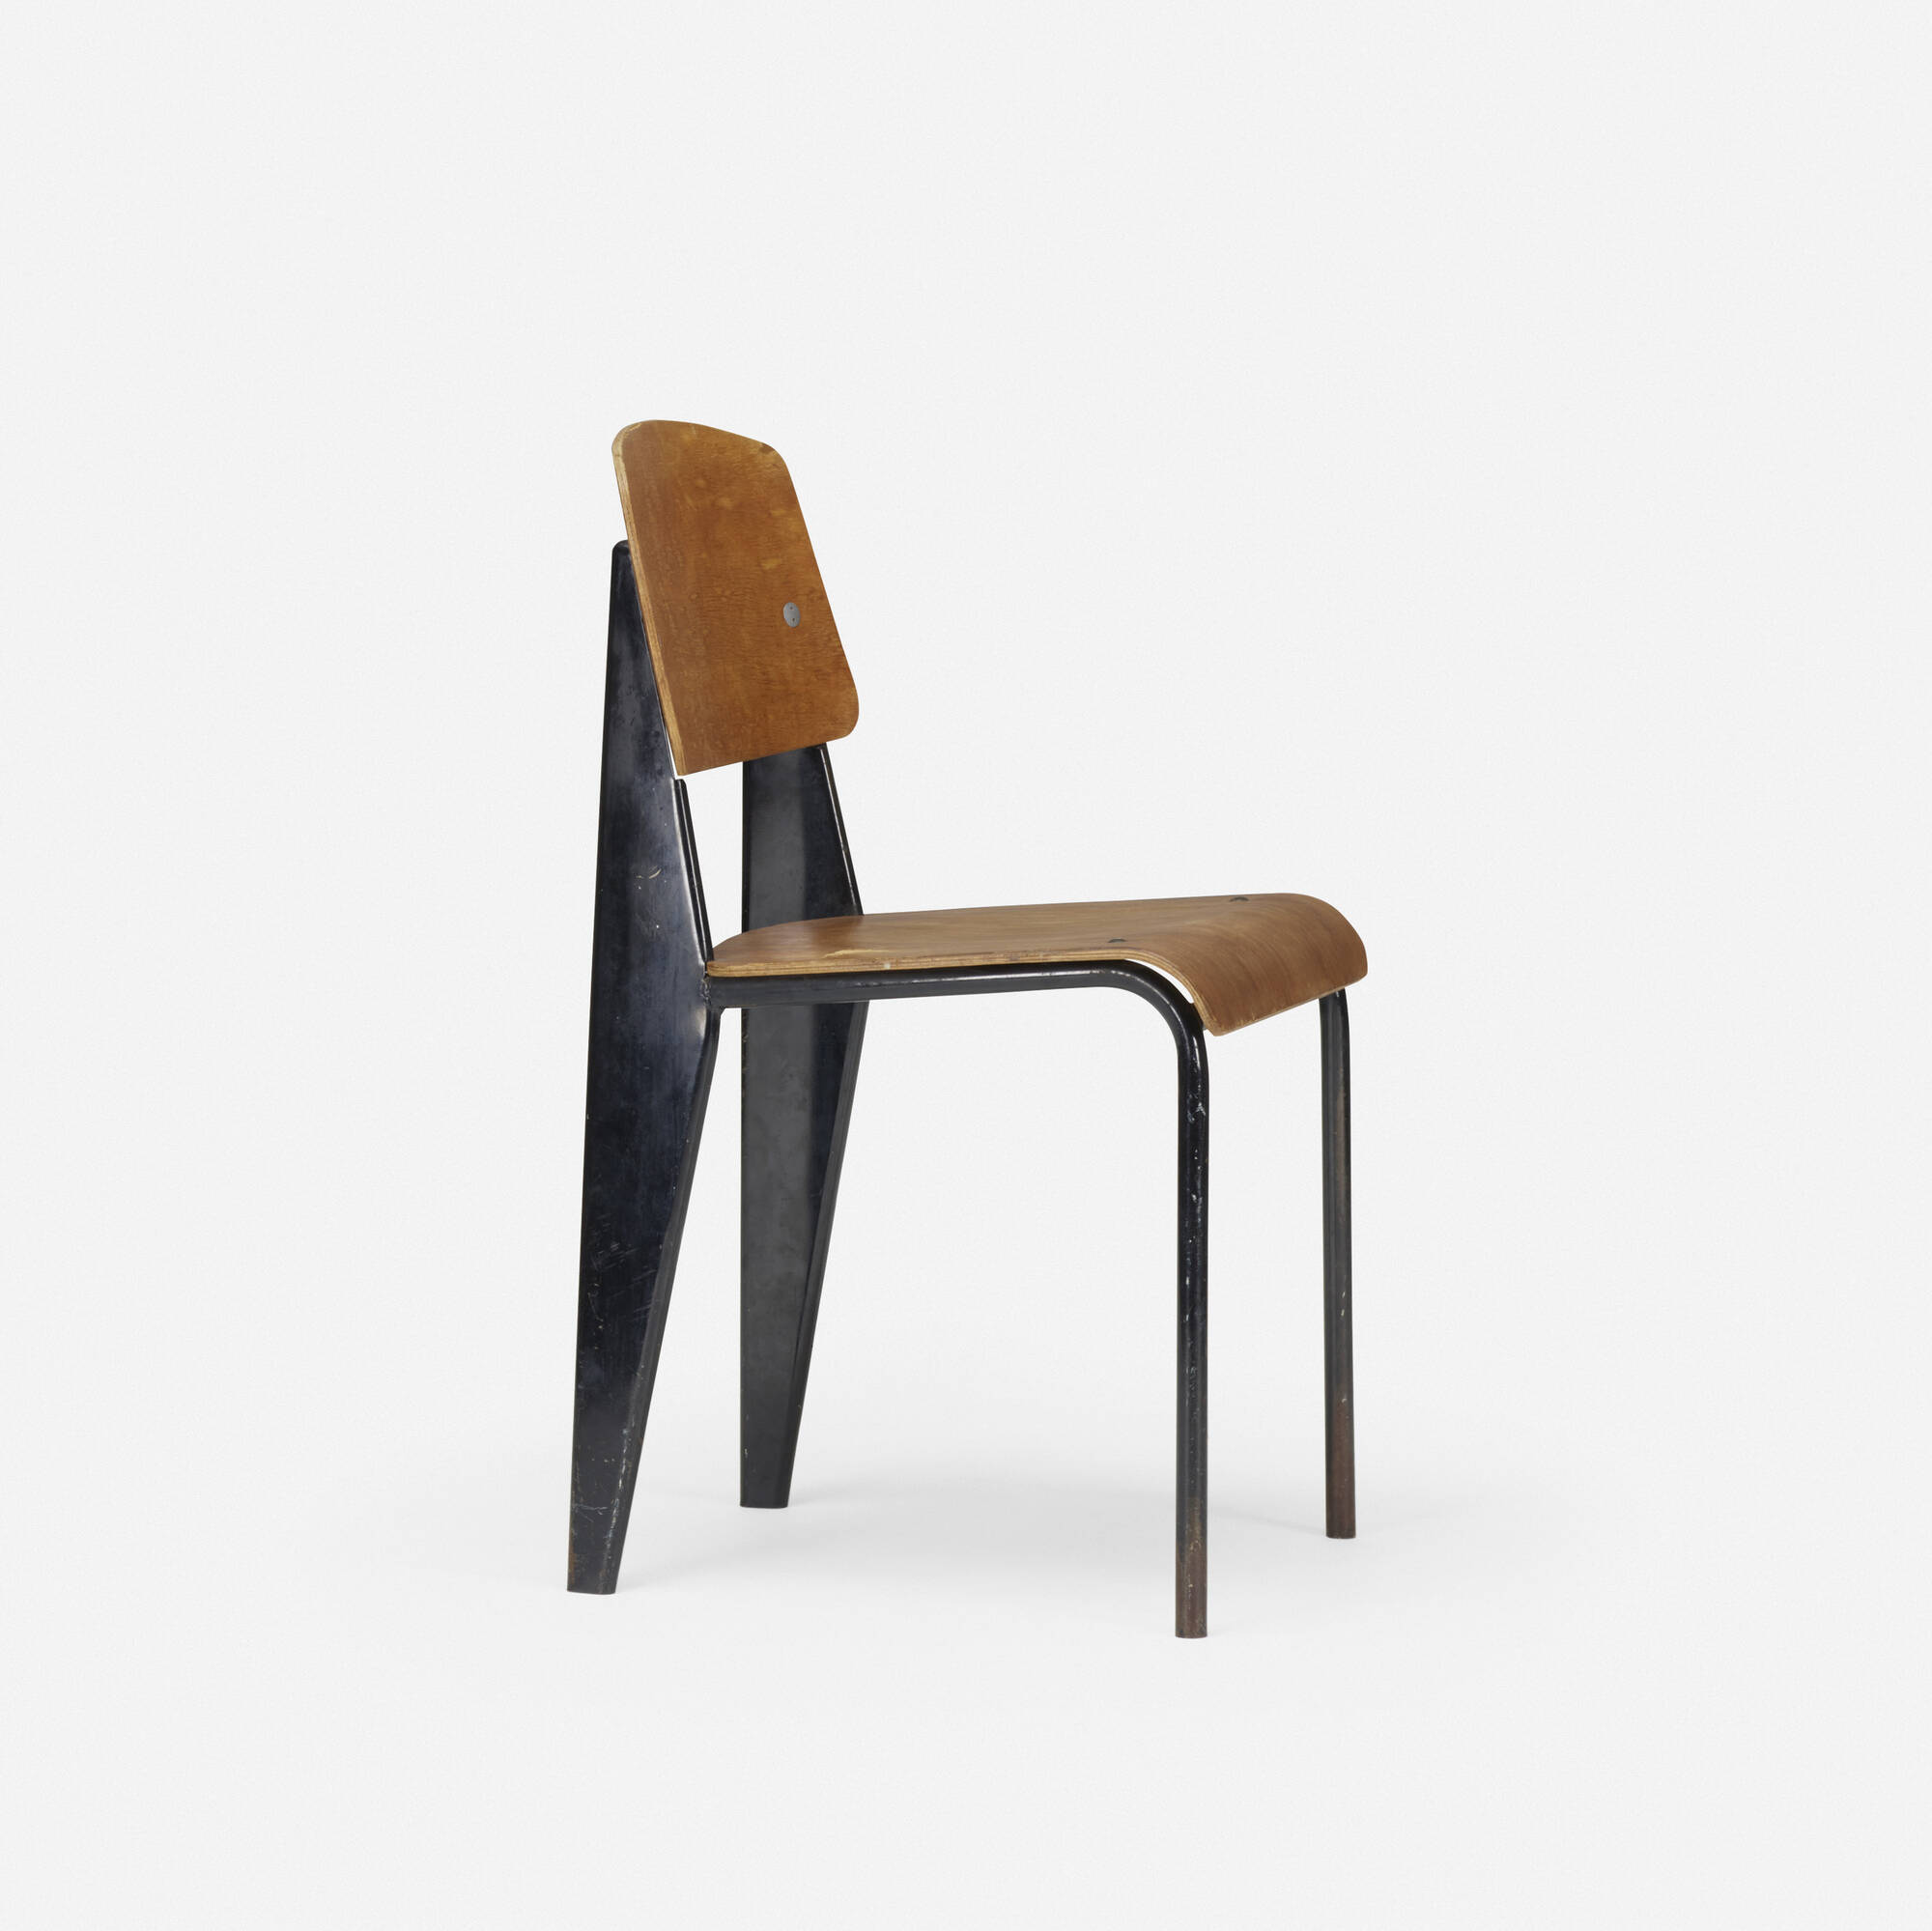 111 jean prouvÉ 'semimetal' chair model no 305  design